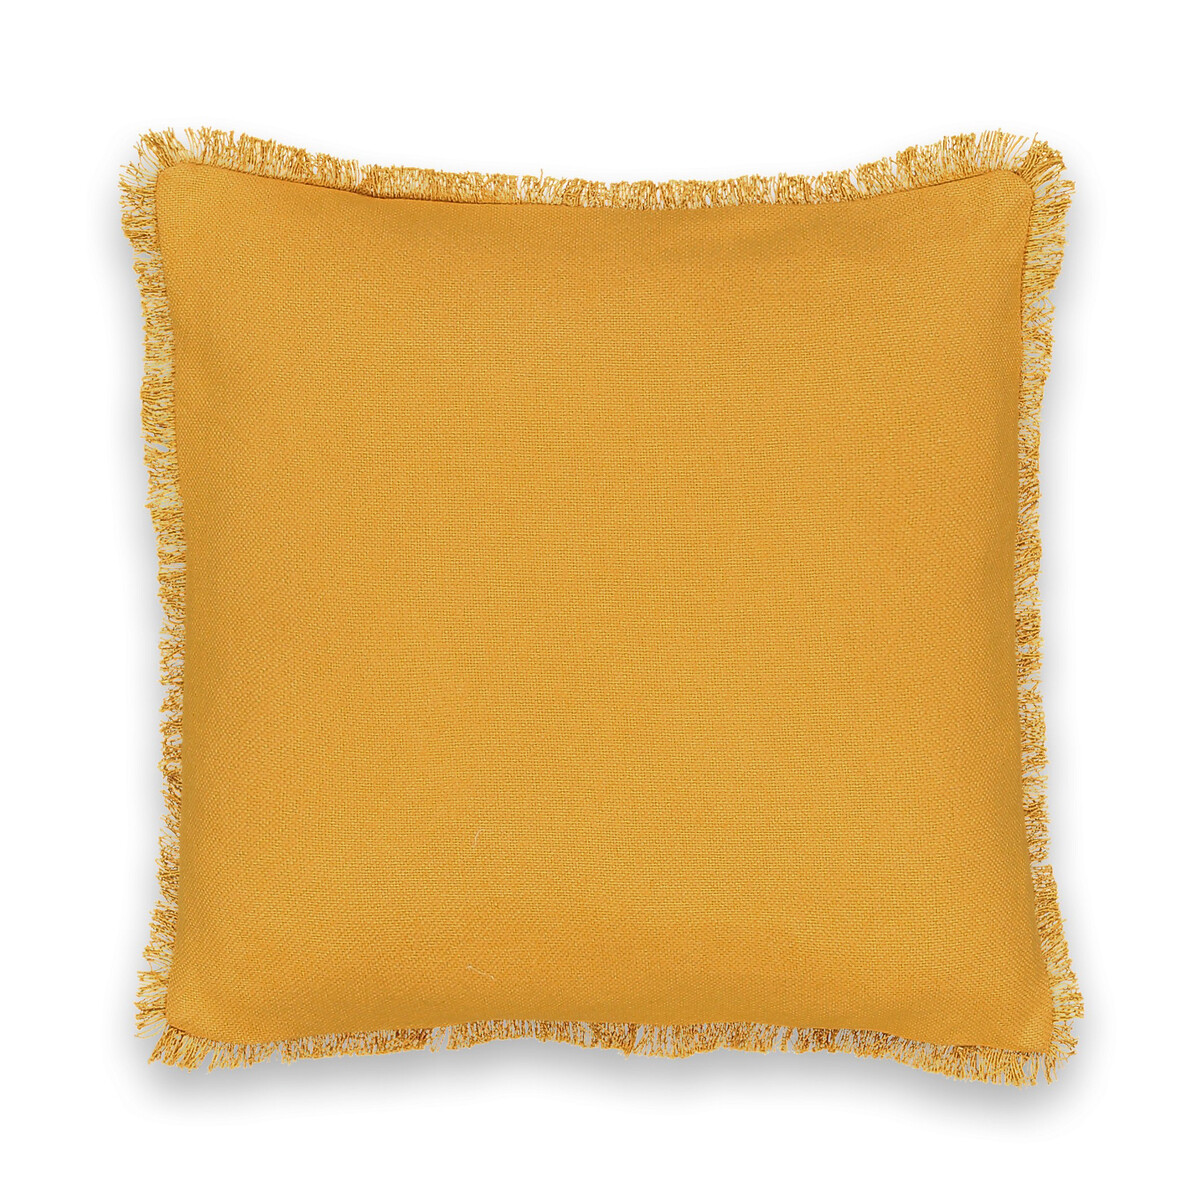 PANAMA Fringed Cotton Cushion Cover